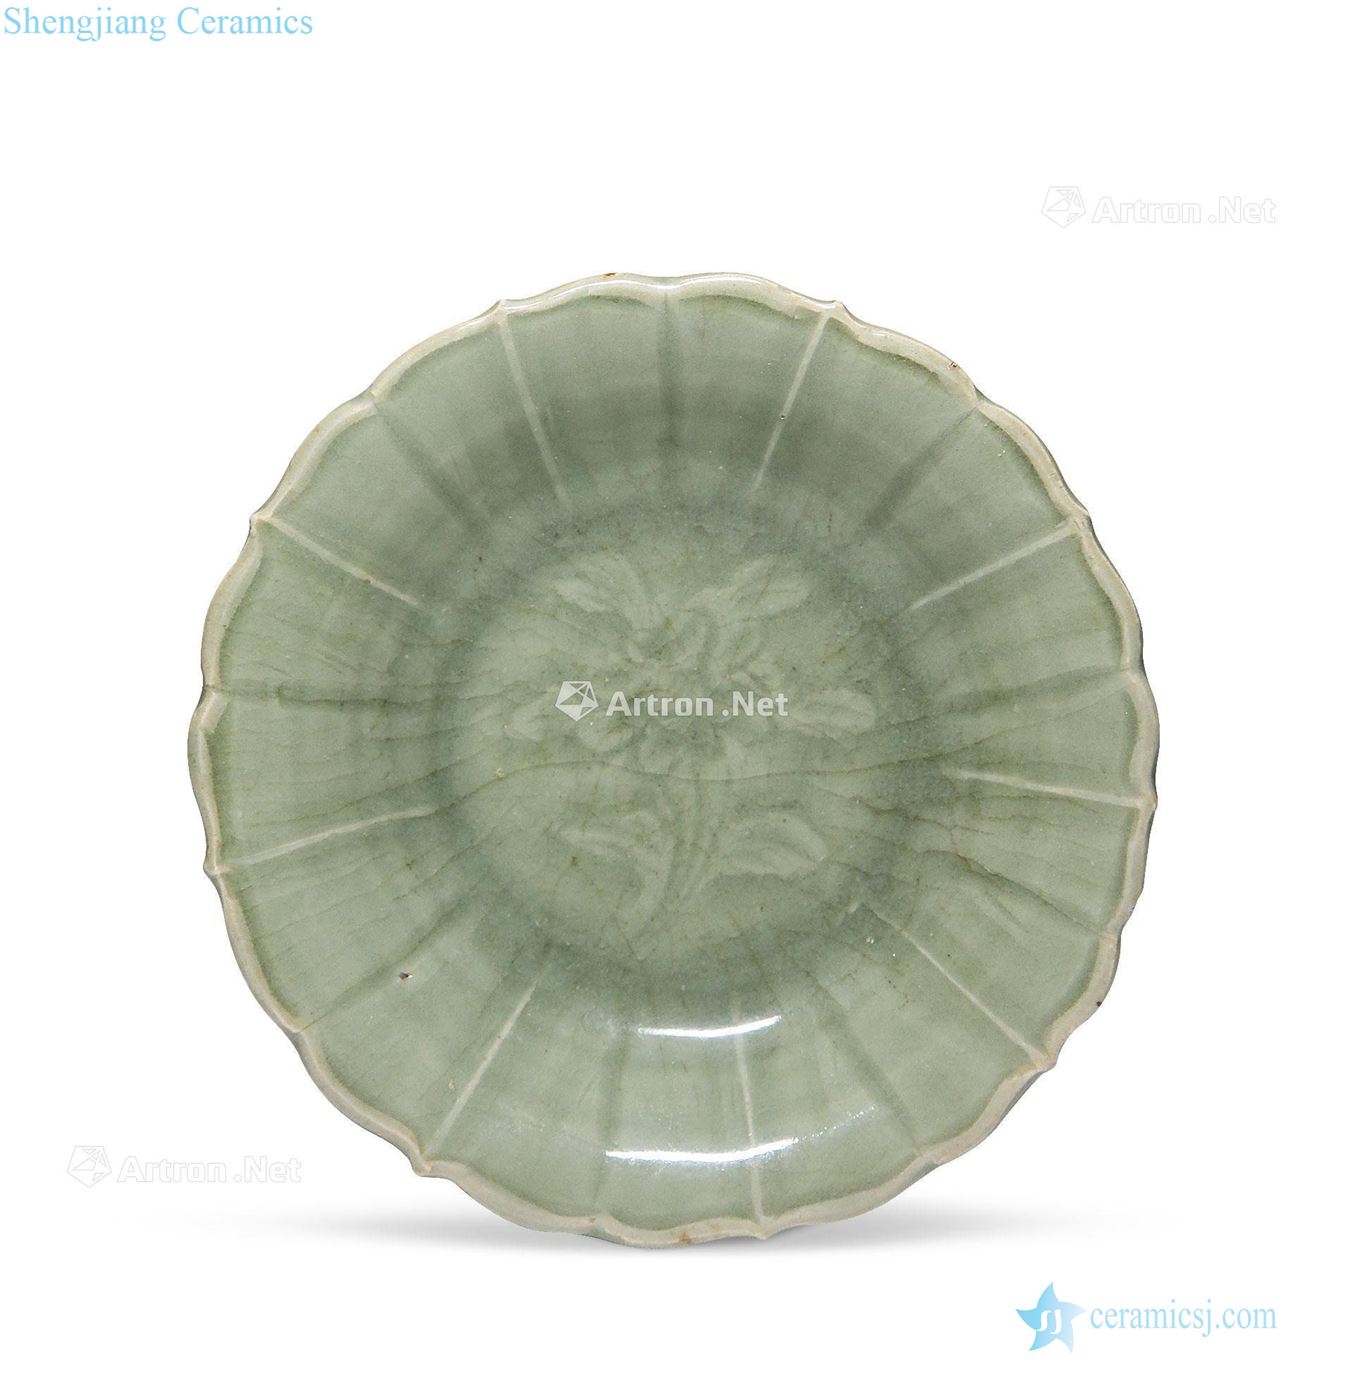 yuan Longquan flower-shaped disc